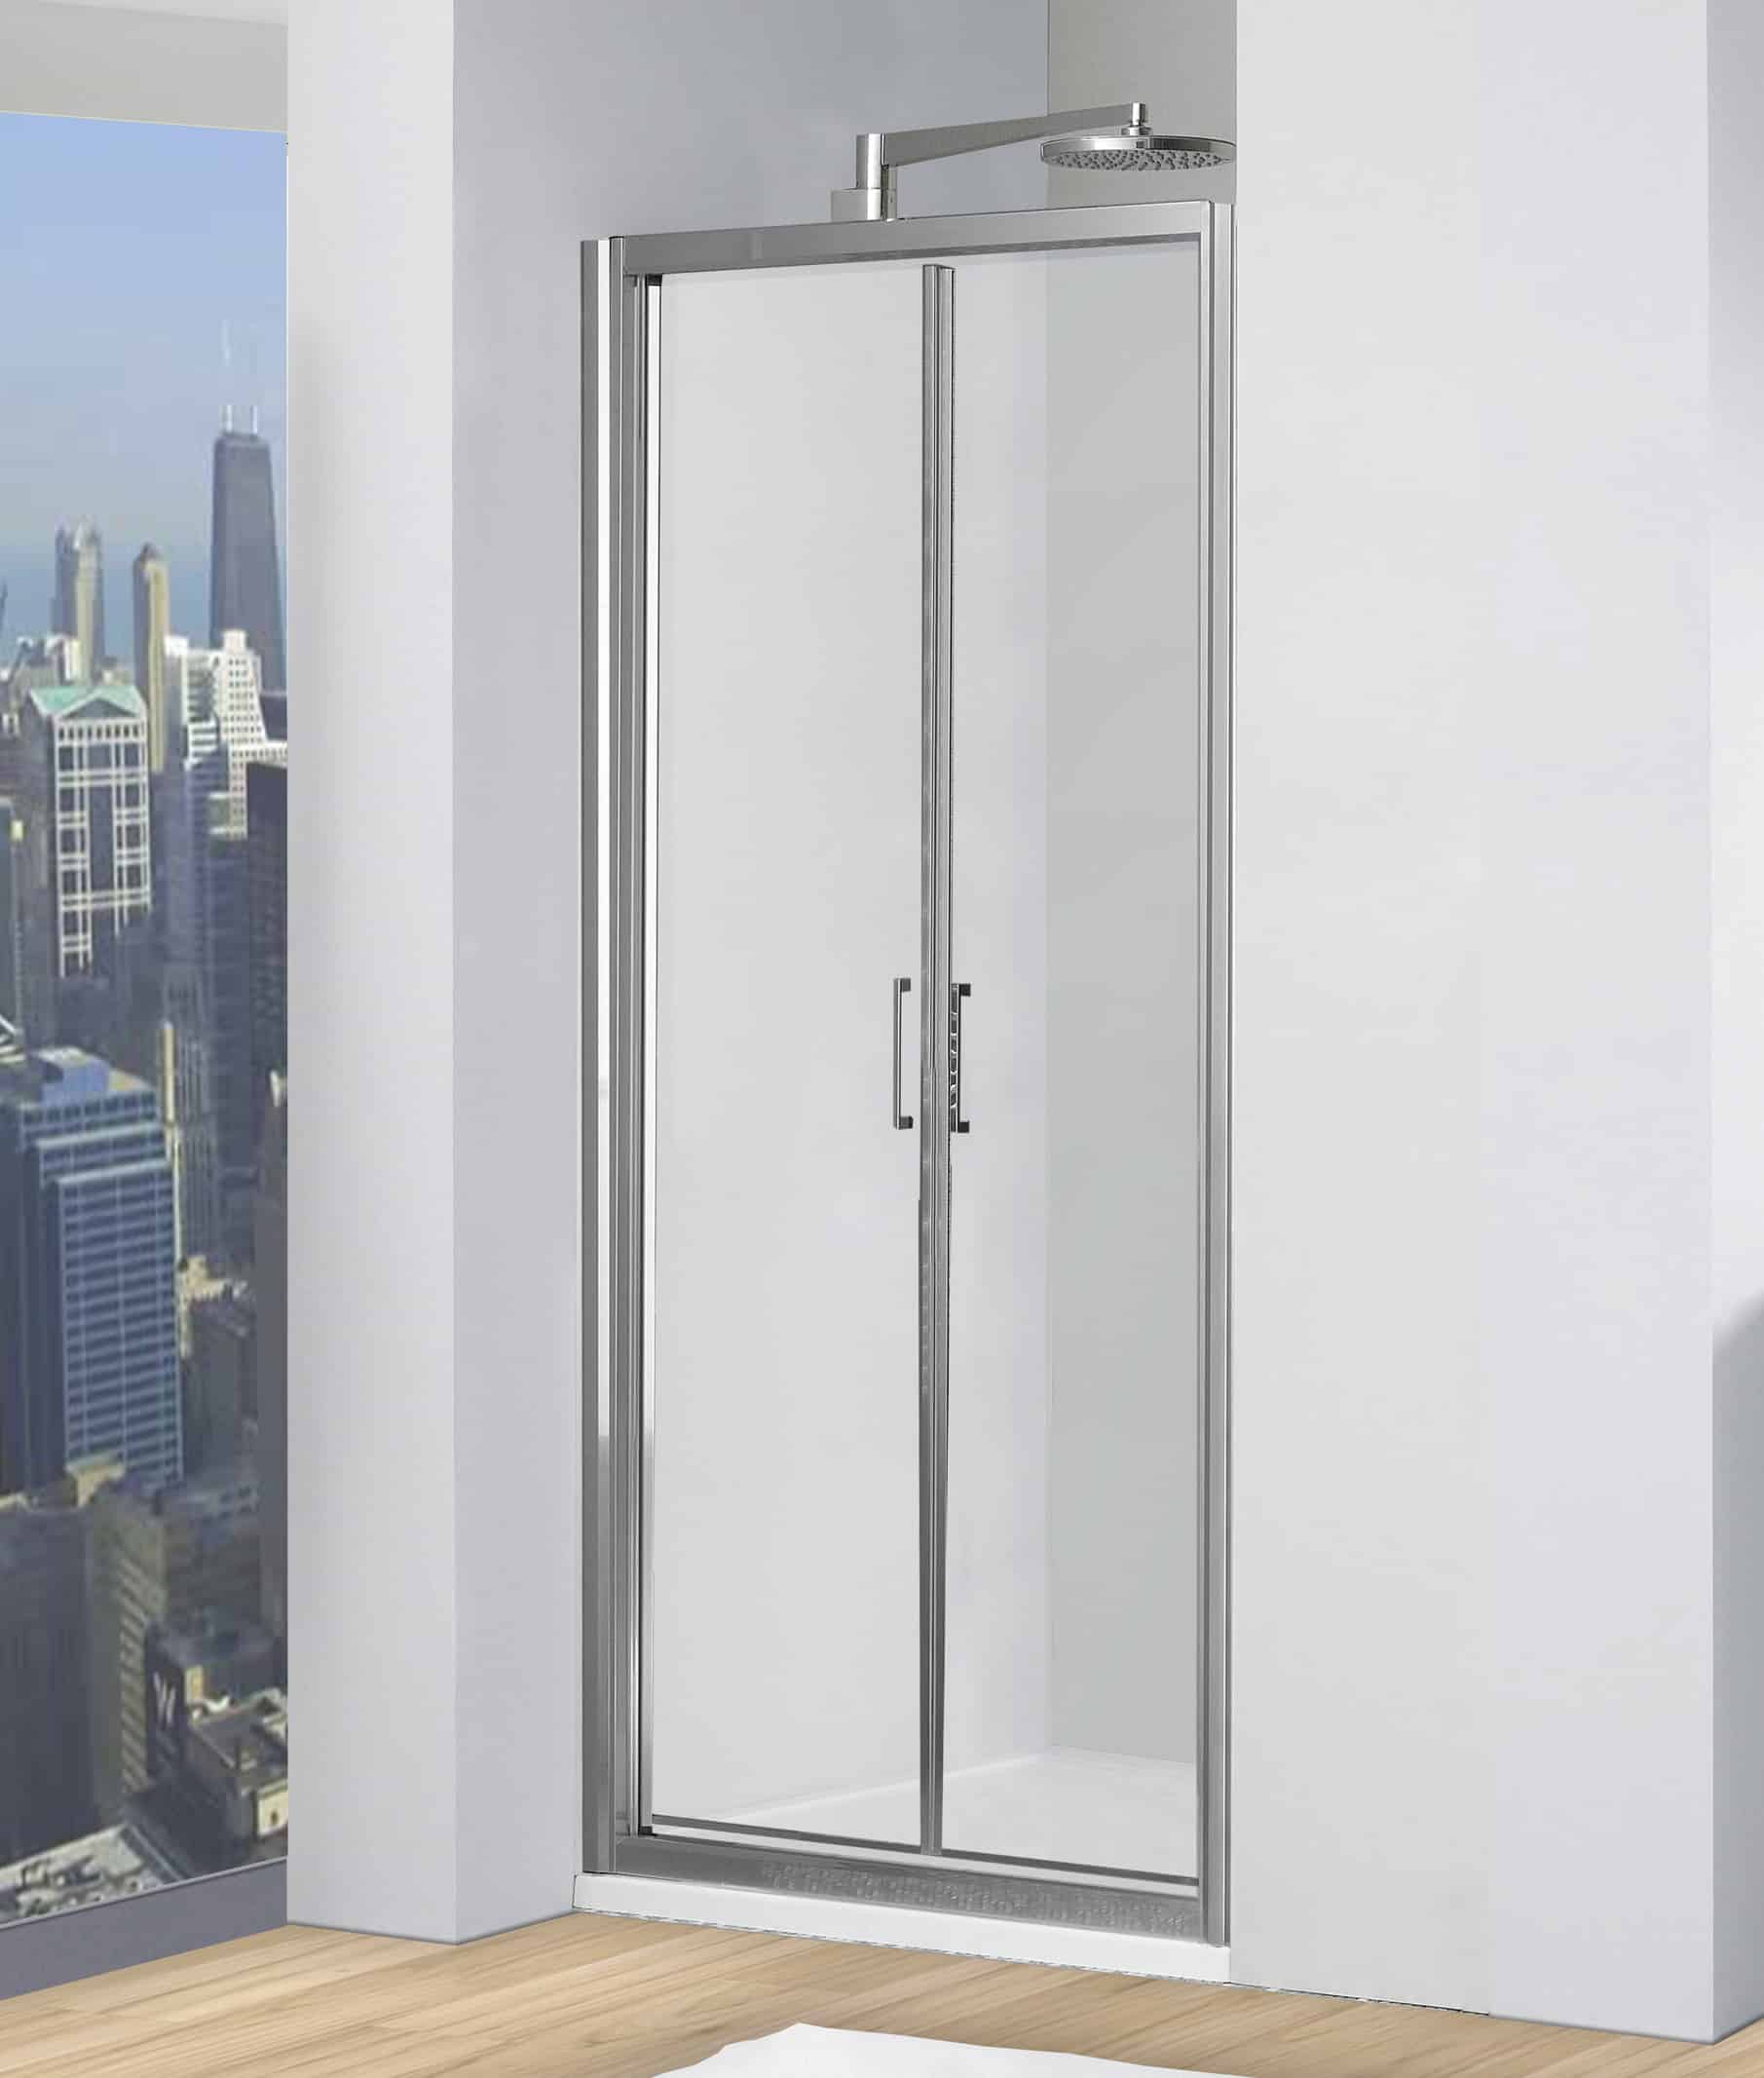 Doccia Virtus-porta con apertura saloon 70 cm - profilo argento lucido,  vetro trasparente - La Doccia Srl - Ricambi e Box Doccia